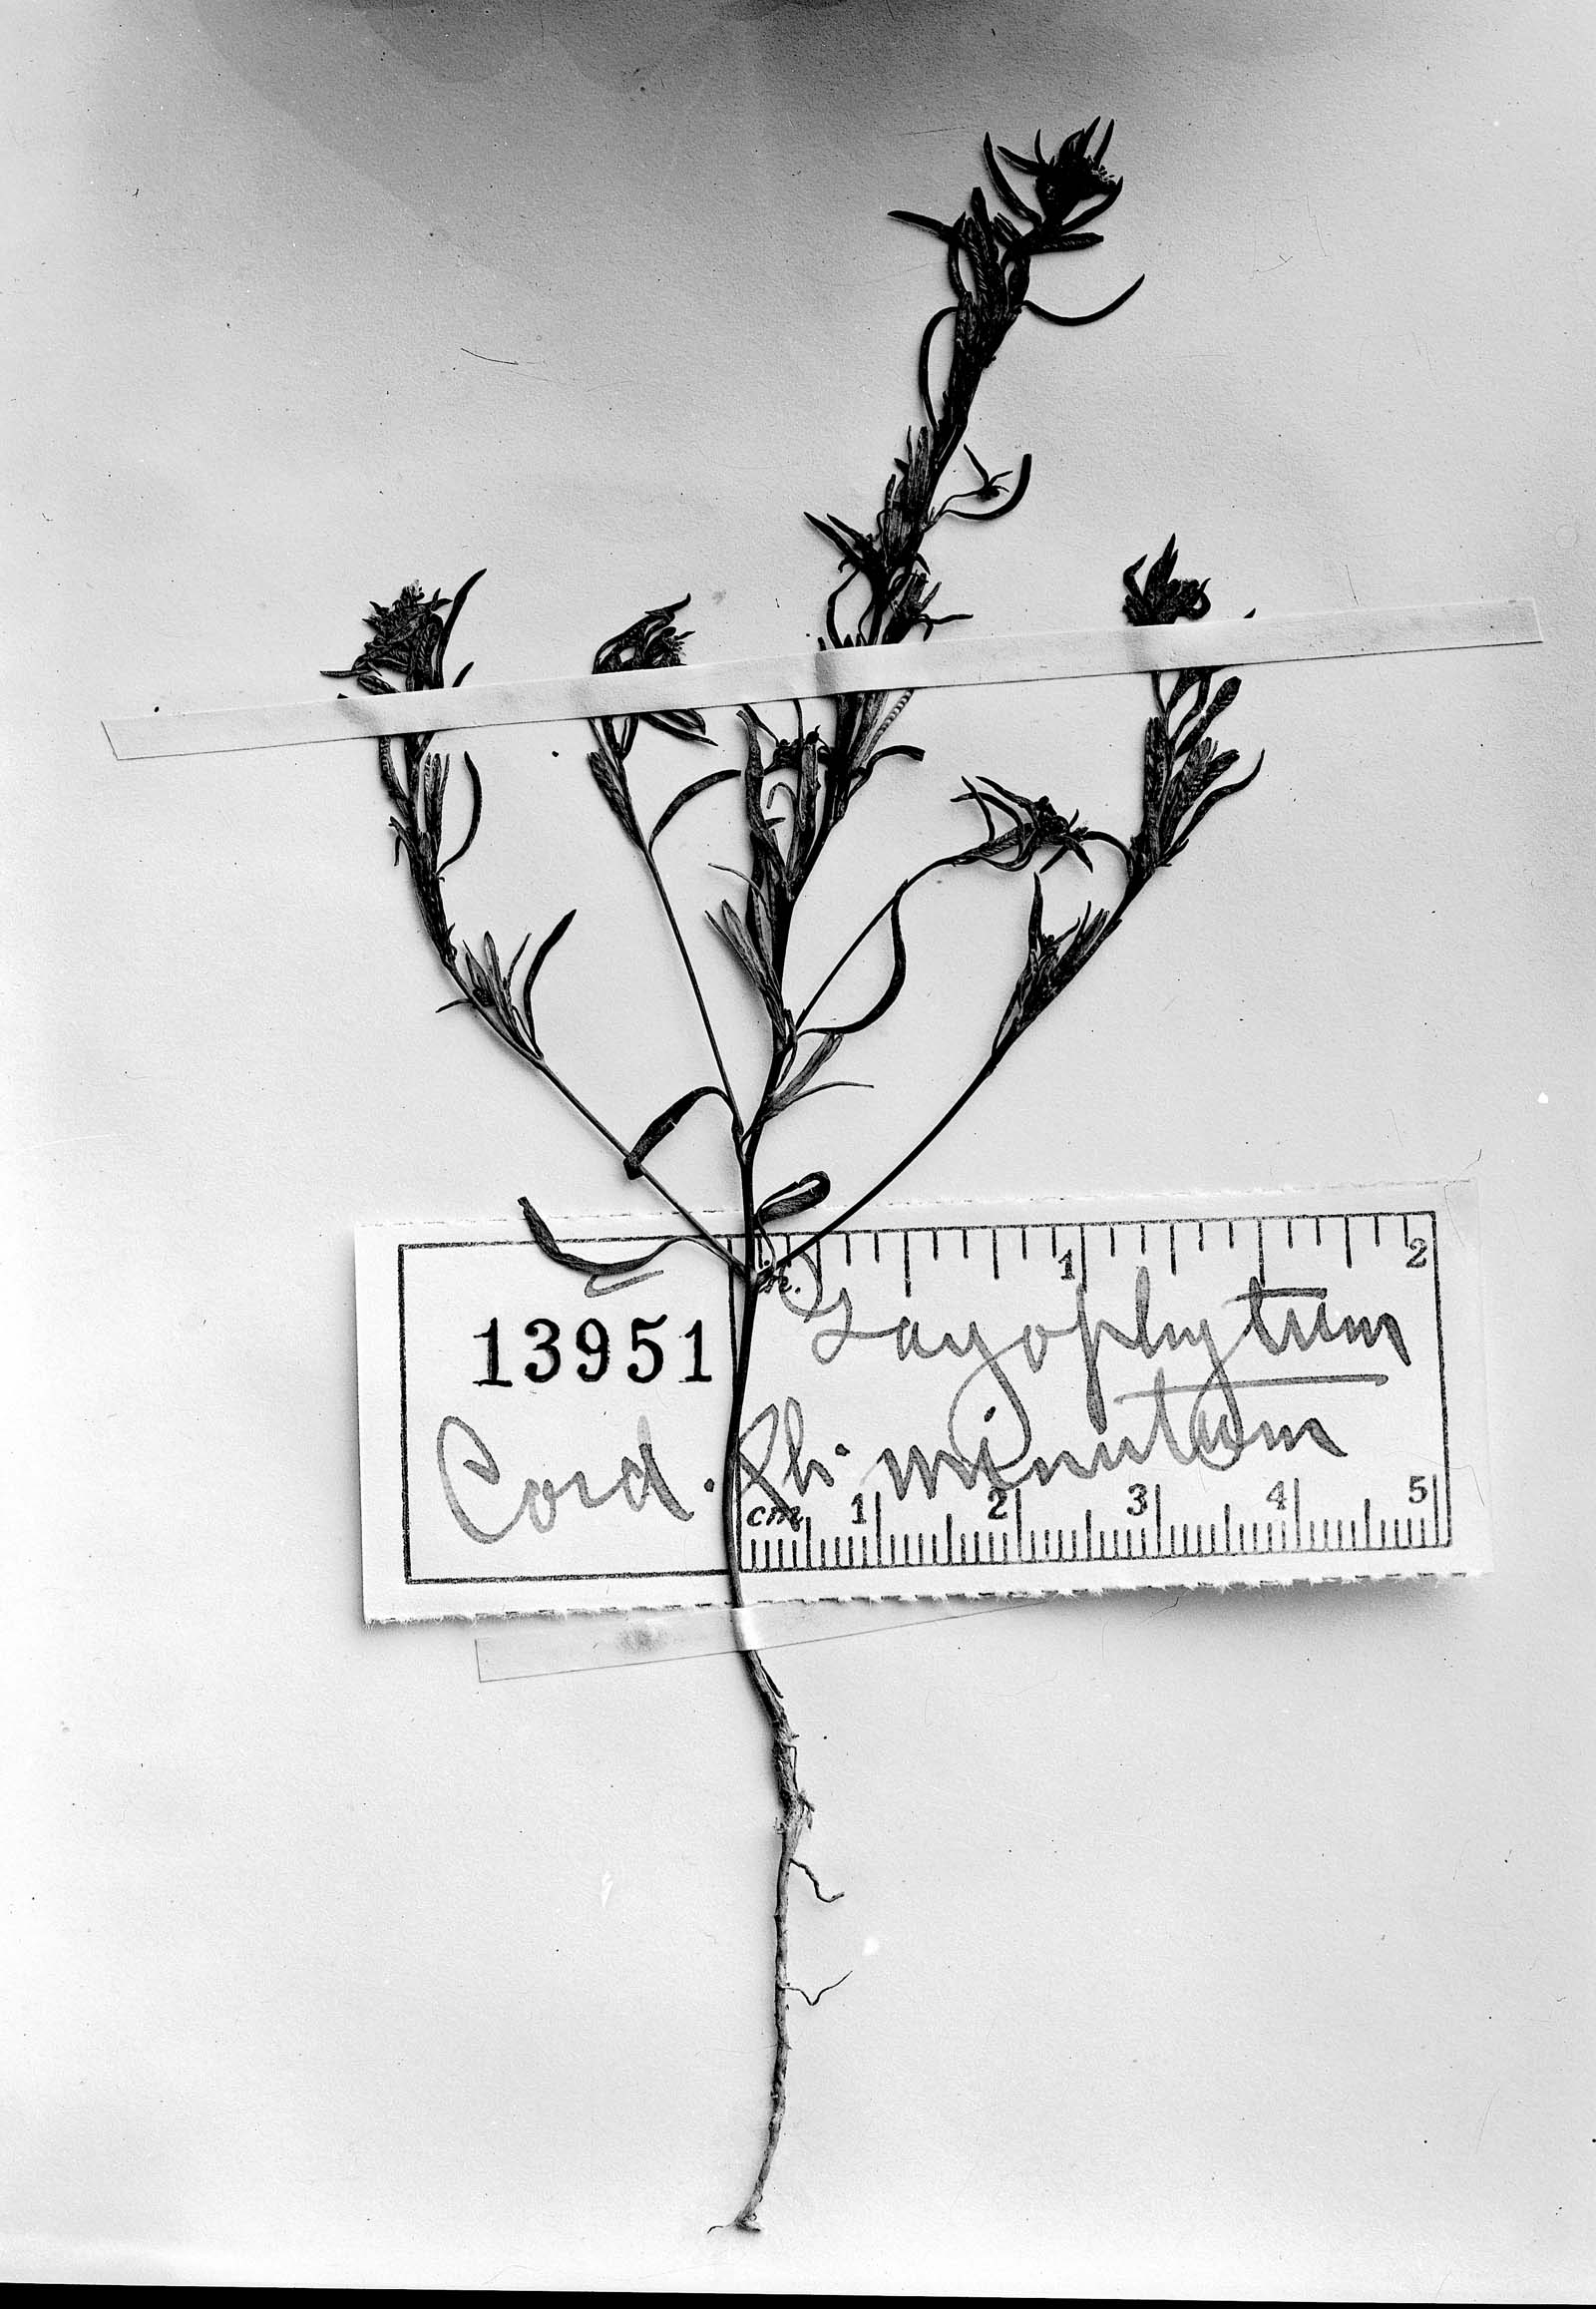 Gayophytum humile image